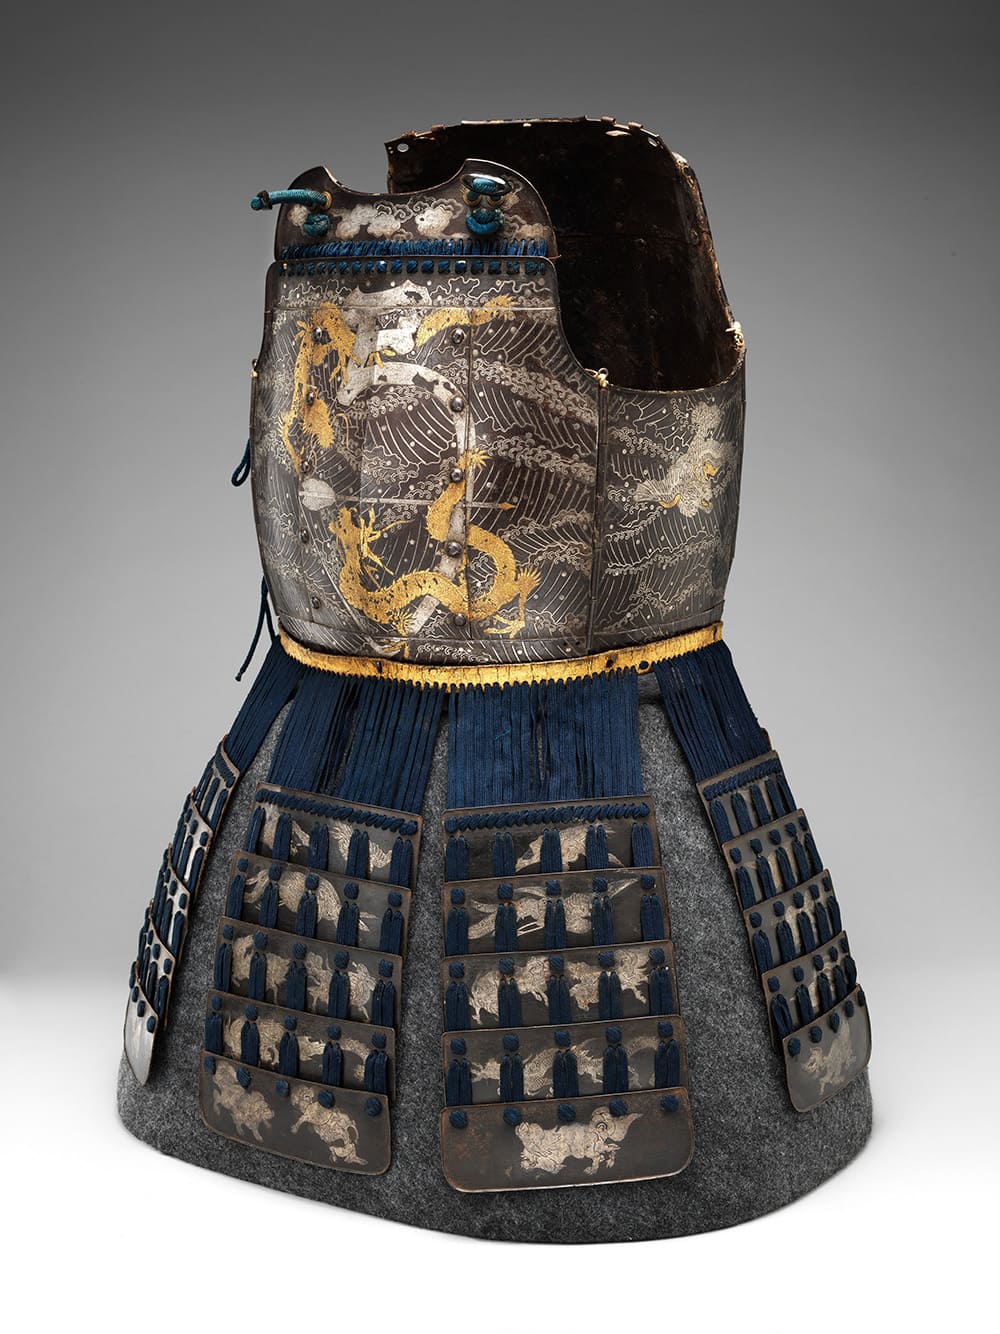 Dō armor